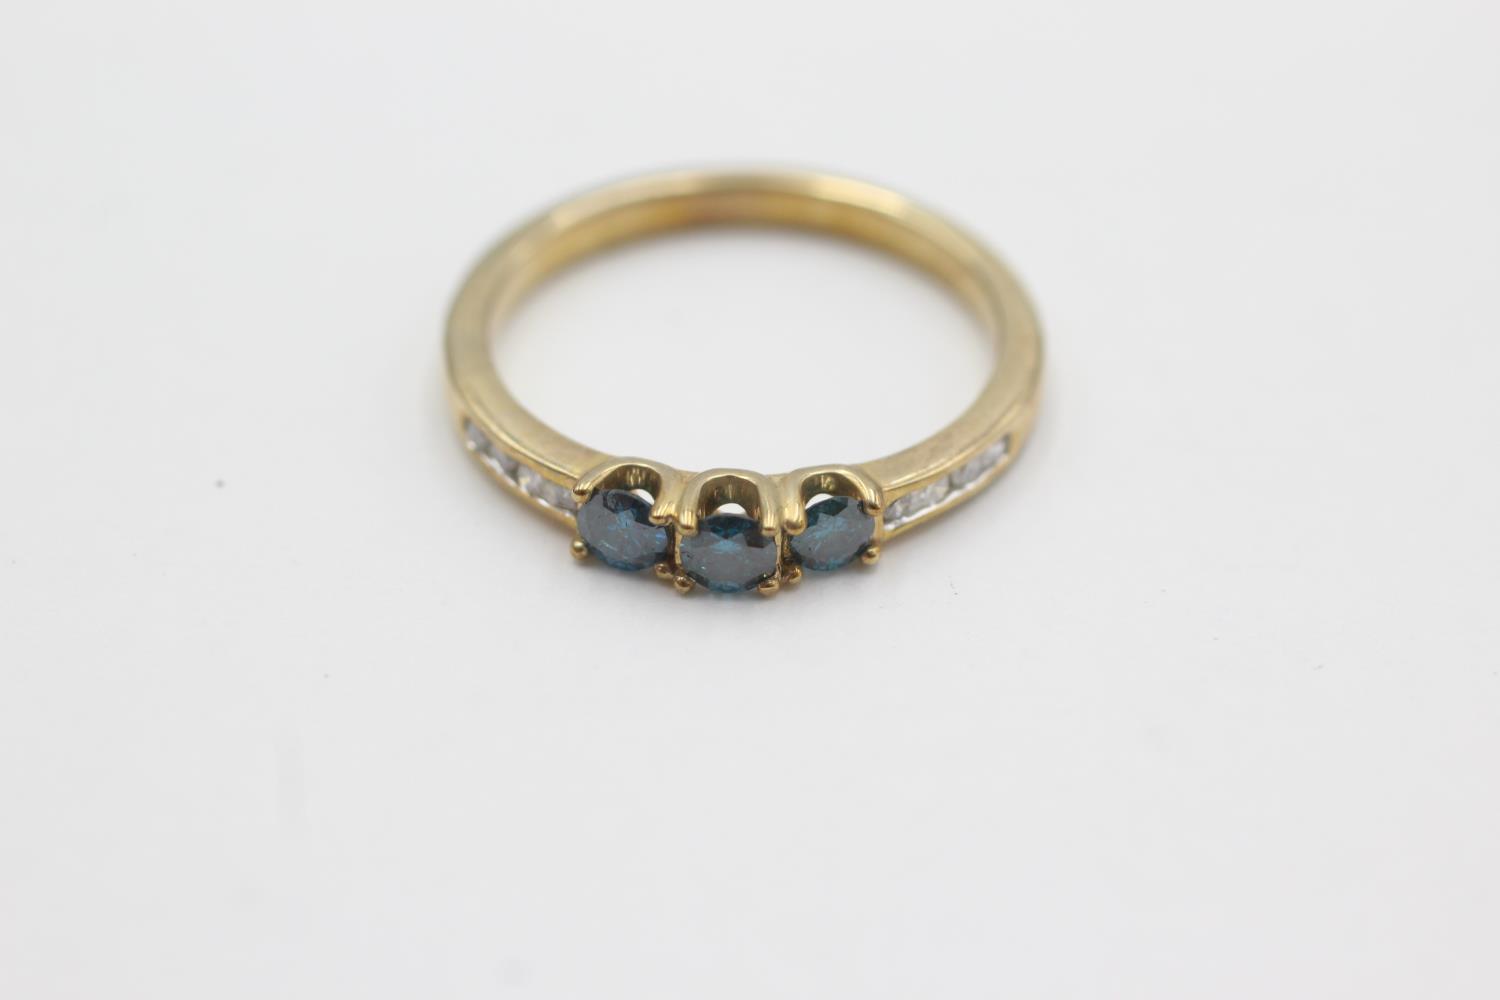 9ct gold diamond & blue treated diamond ring (2.7g) Size Q